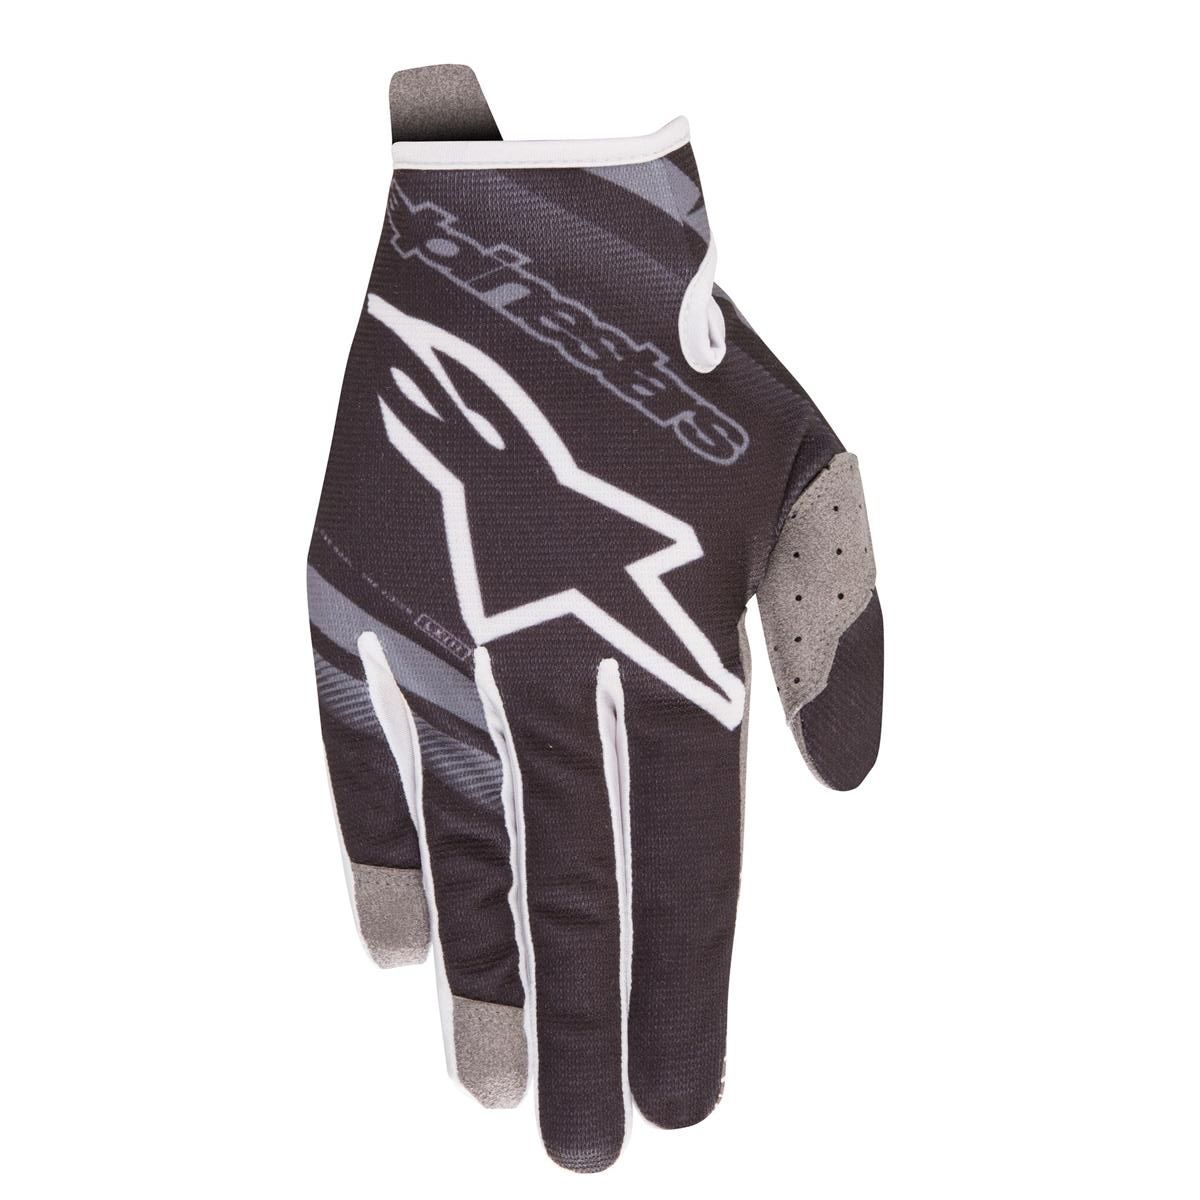 Alpinestars Gloves Radar Black/Mid Grey